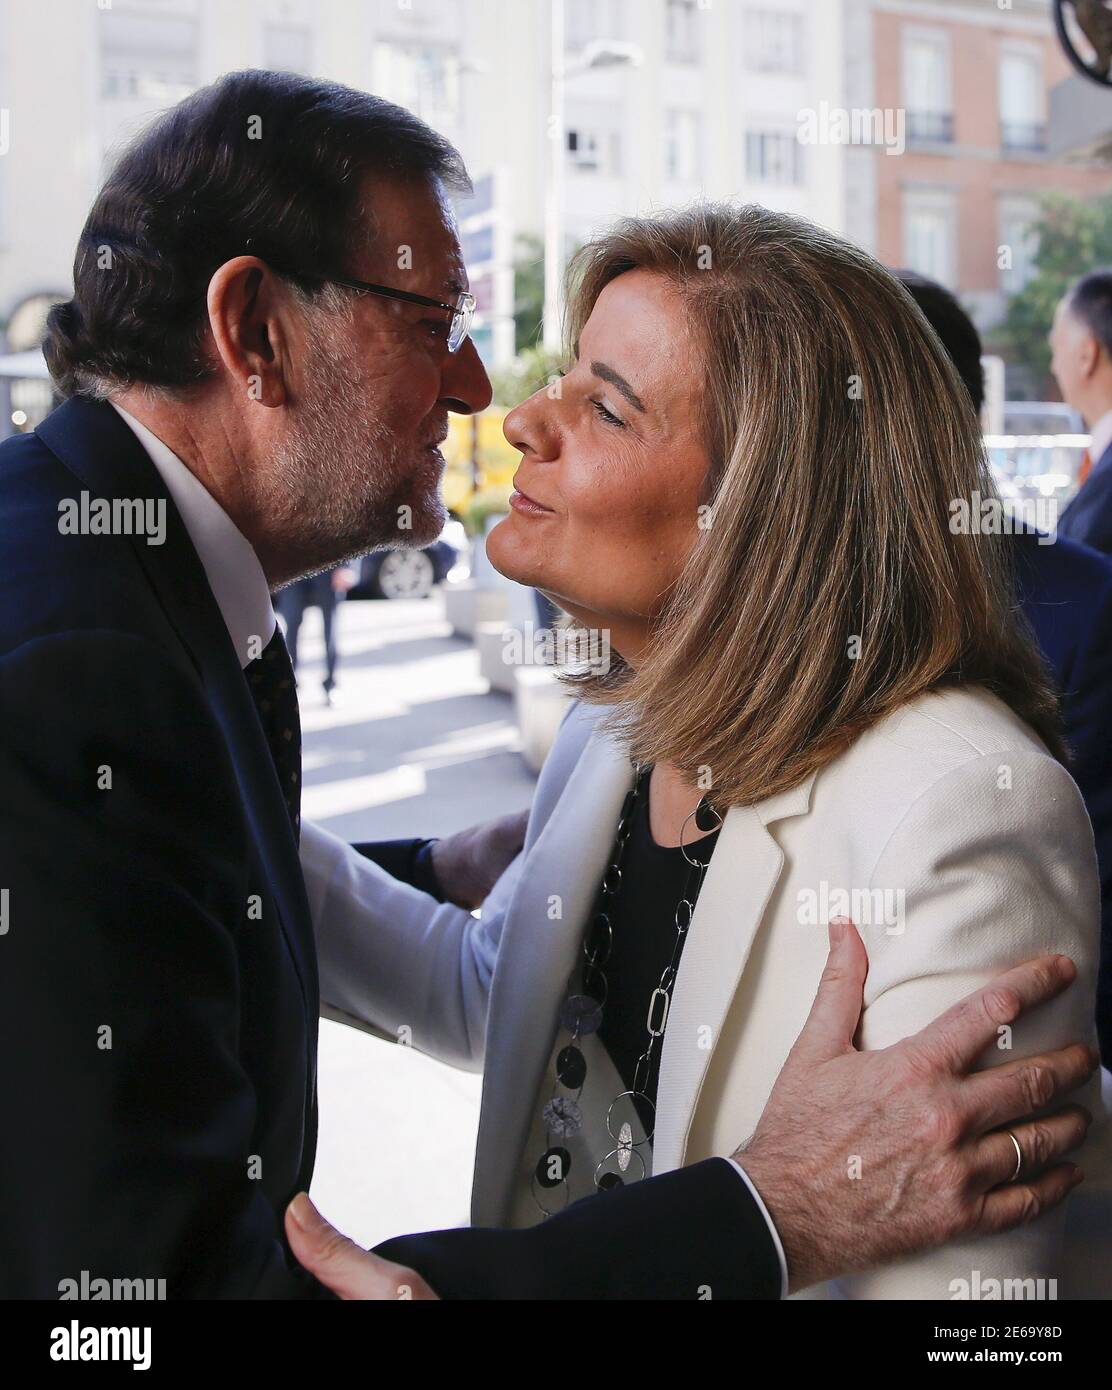 El primer ministro español Mariano Rajoy (L) abraza al ministro laborista Fátima Banez cuando llegó a un evento en Madrid, España, el 23 de julio de 2015. La tasa de desempleo de España cayó a su nivel más bajo en más de tres años en el segundo trimestre, ofreciendo un impulso al primer ministro Mariano Rajoy mientras busca persuadir a los votantes de que se está arraigando una recuperación económica. Con un 22.4 por ciento, la tasa de desempleo sigue siendo más alta que en cualquier otro lugar de Europa que no sea la crisis de Grecia y no ha descendido por debajo de una quinta parte de la fuerza laboral en cinco años, incluso después de que España salió de la recesión a mediados de 2013. REUTERS/Juan Medina Foto de stock